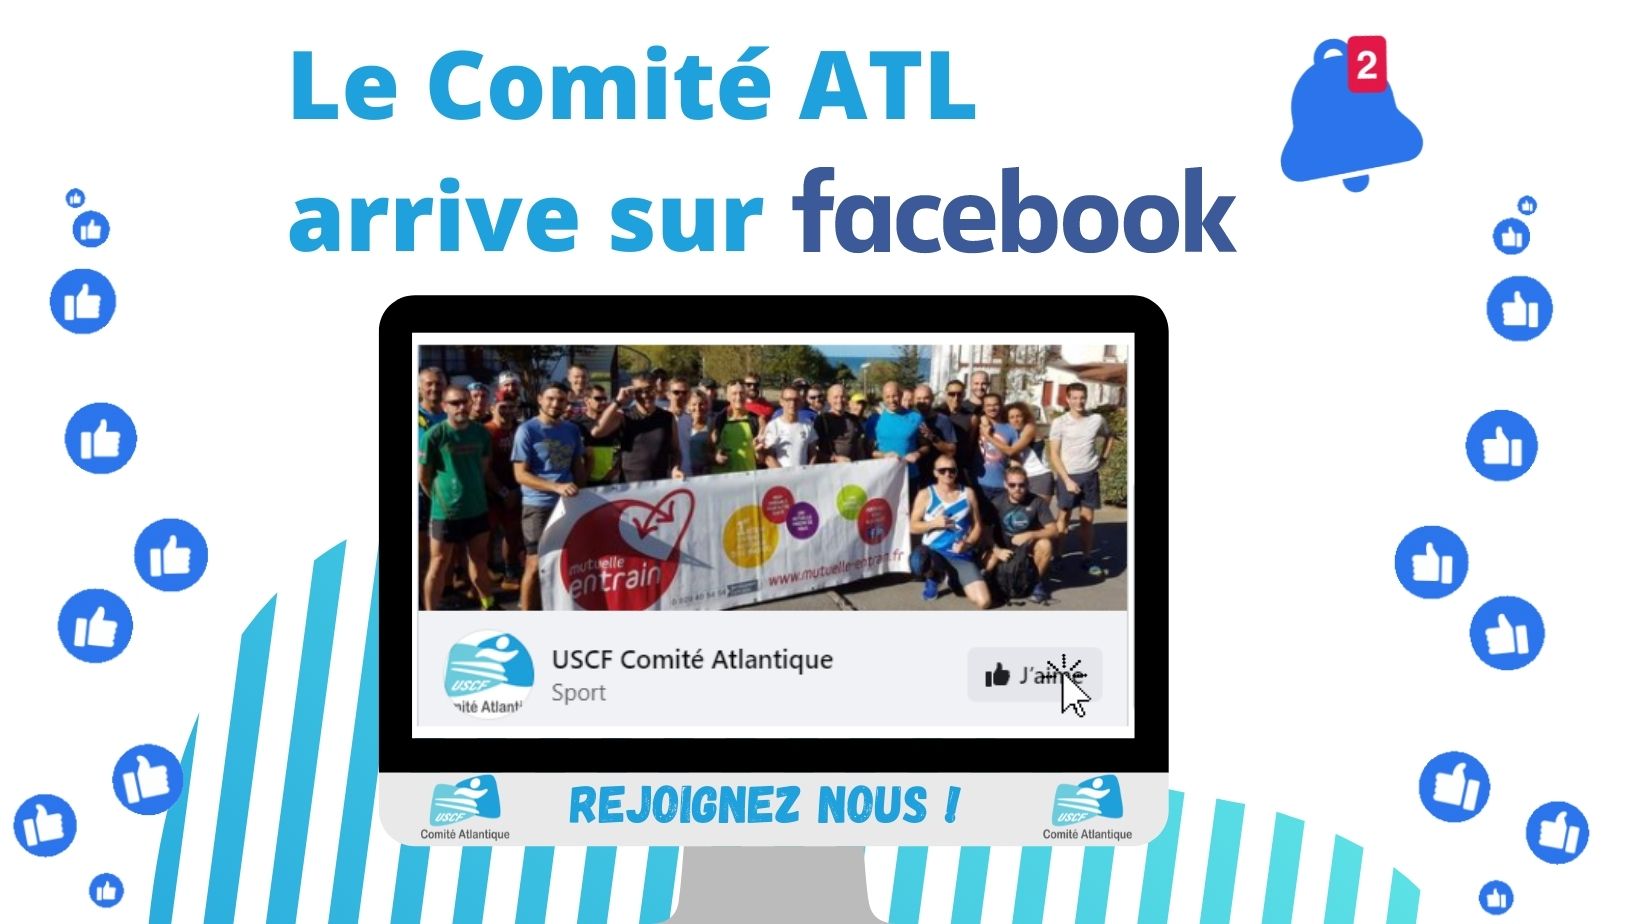 Le Comité ATL arrive sur Facebook !